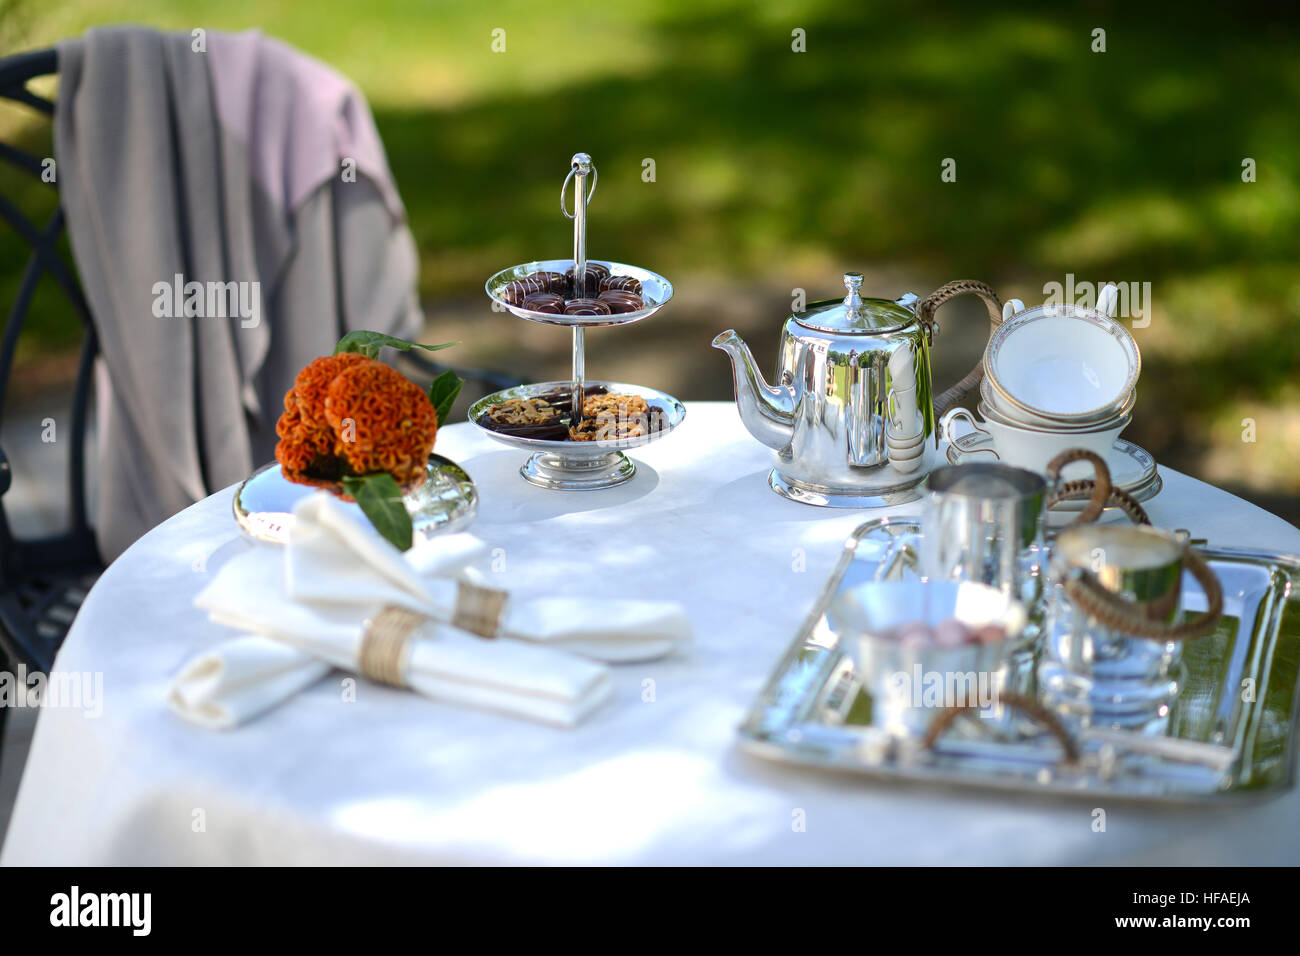 Tisch für einen englischen High Tea oder Tee am Nachmittag, außerhalb mit  silberne Teekanne und Leinen Tischdecke Stockfotografie - Alamy